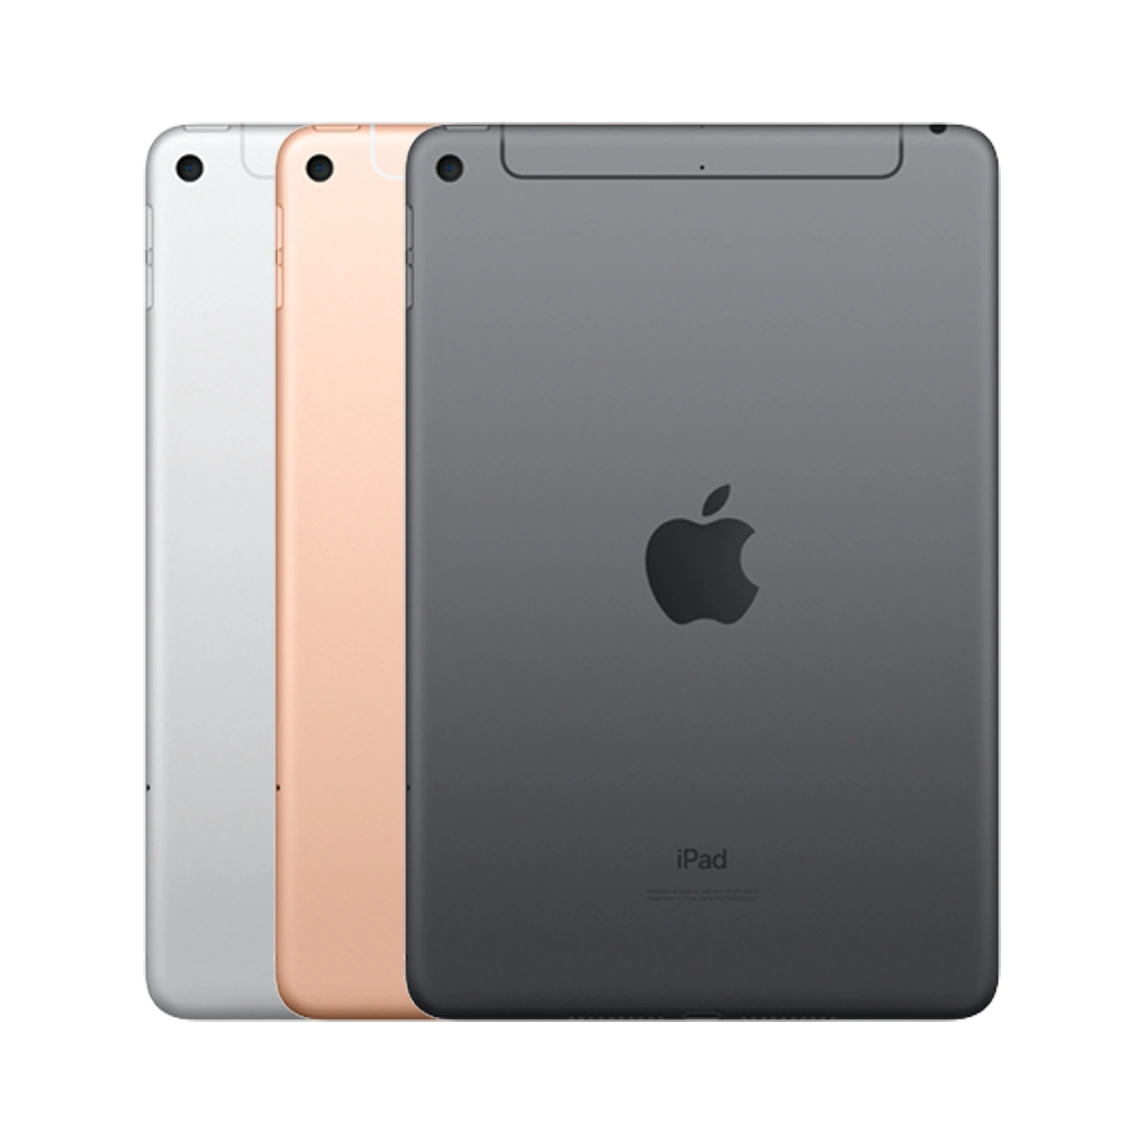 apple-ipad-mini-5th-7-9-inch-64gb-wi-ficellular